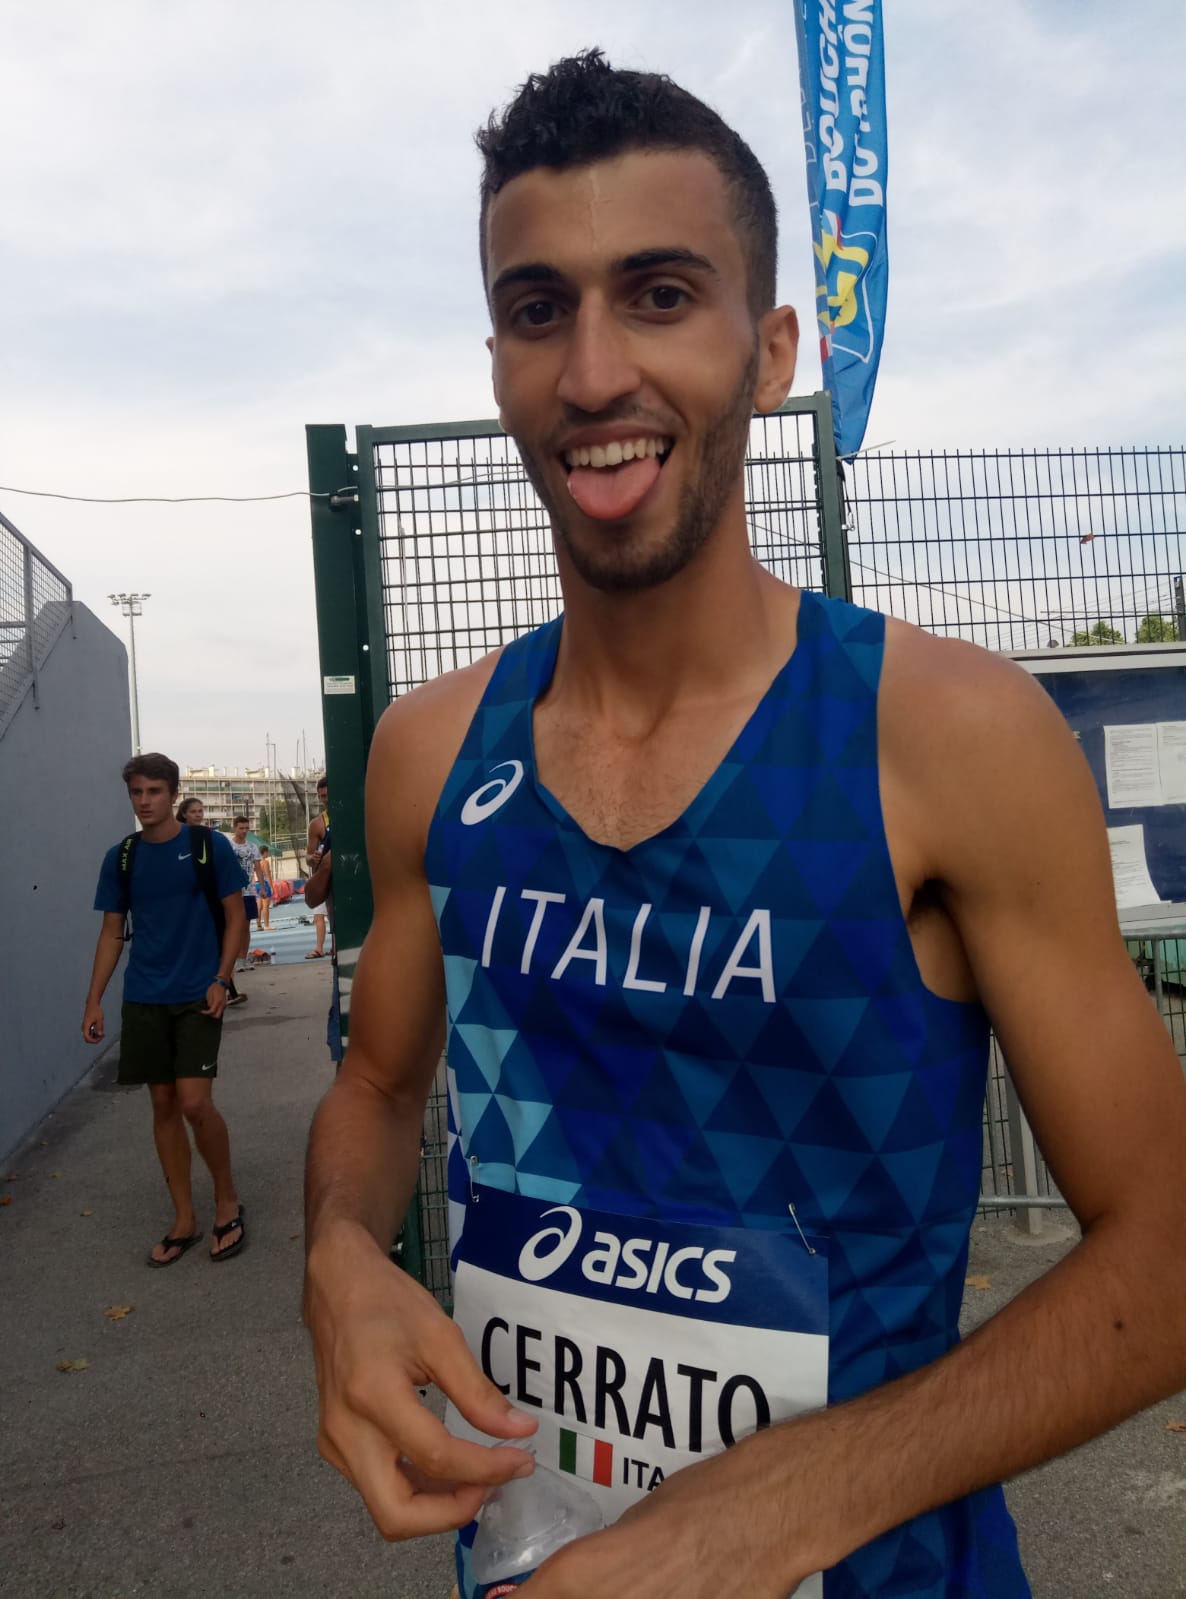 Andrea Cerrato maglia azzurra 2018